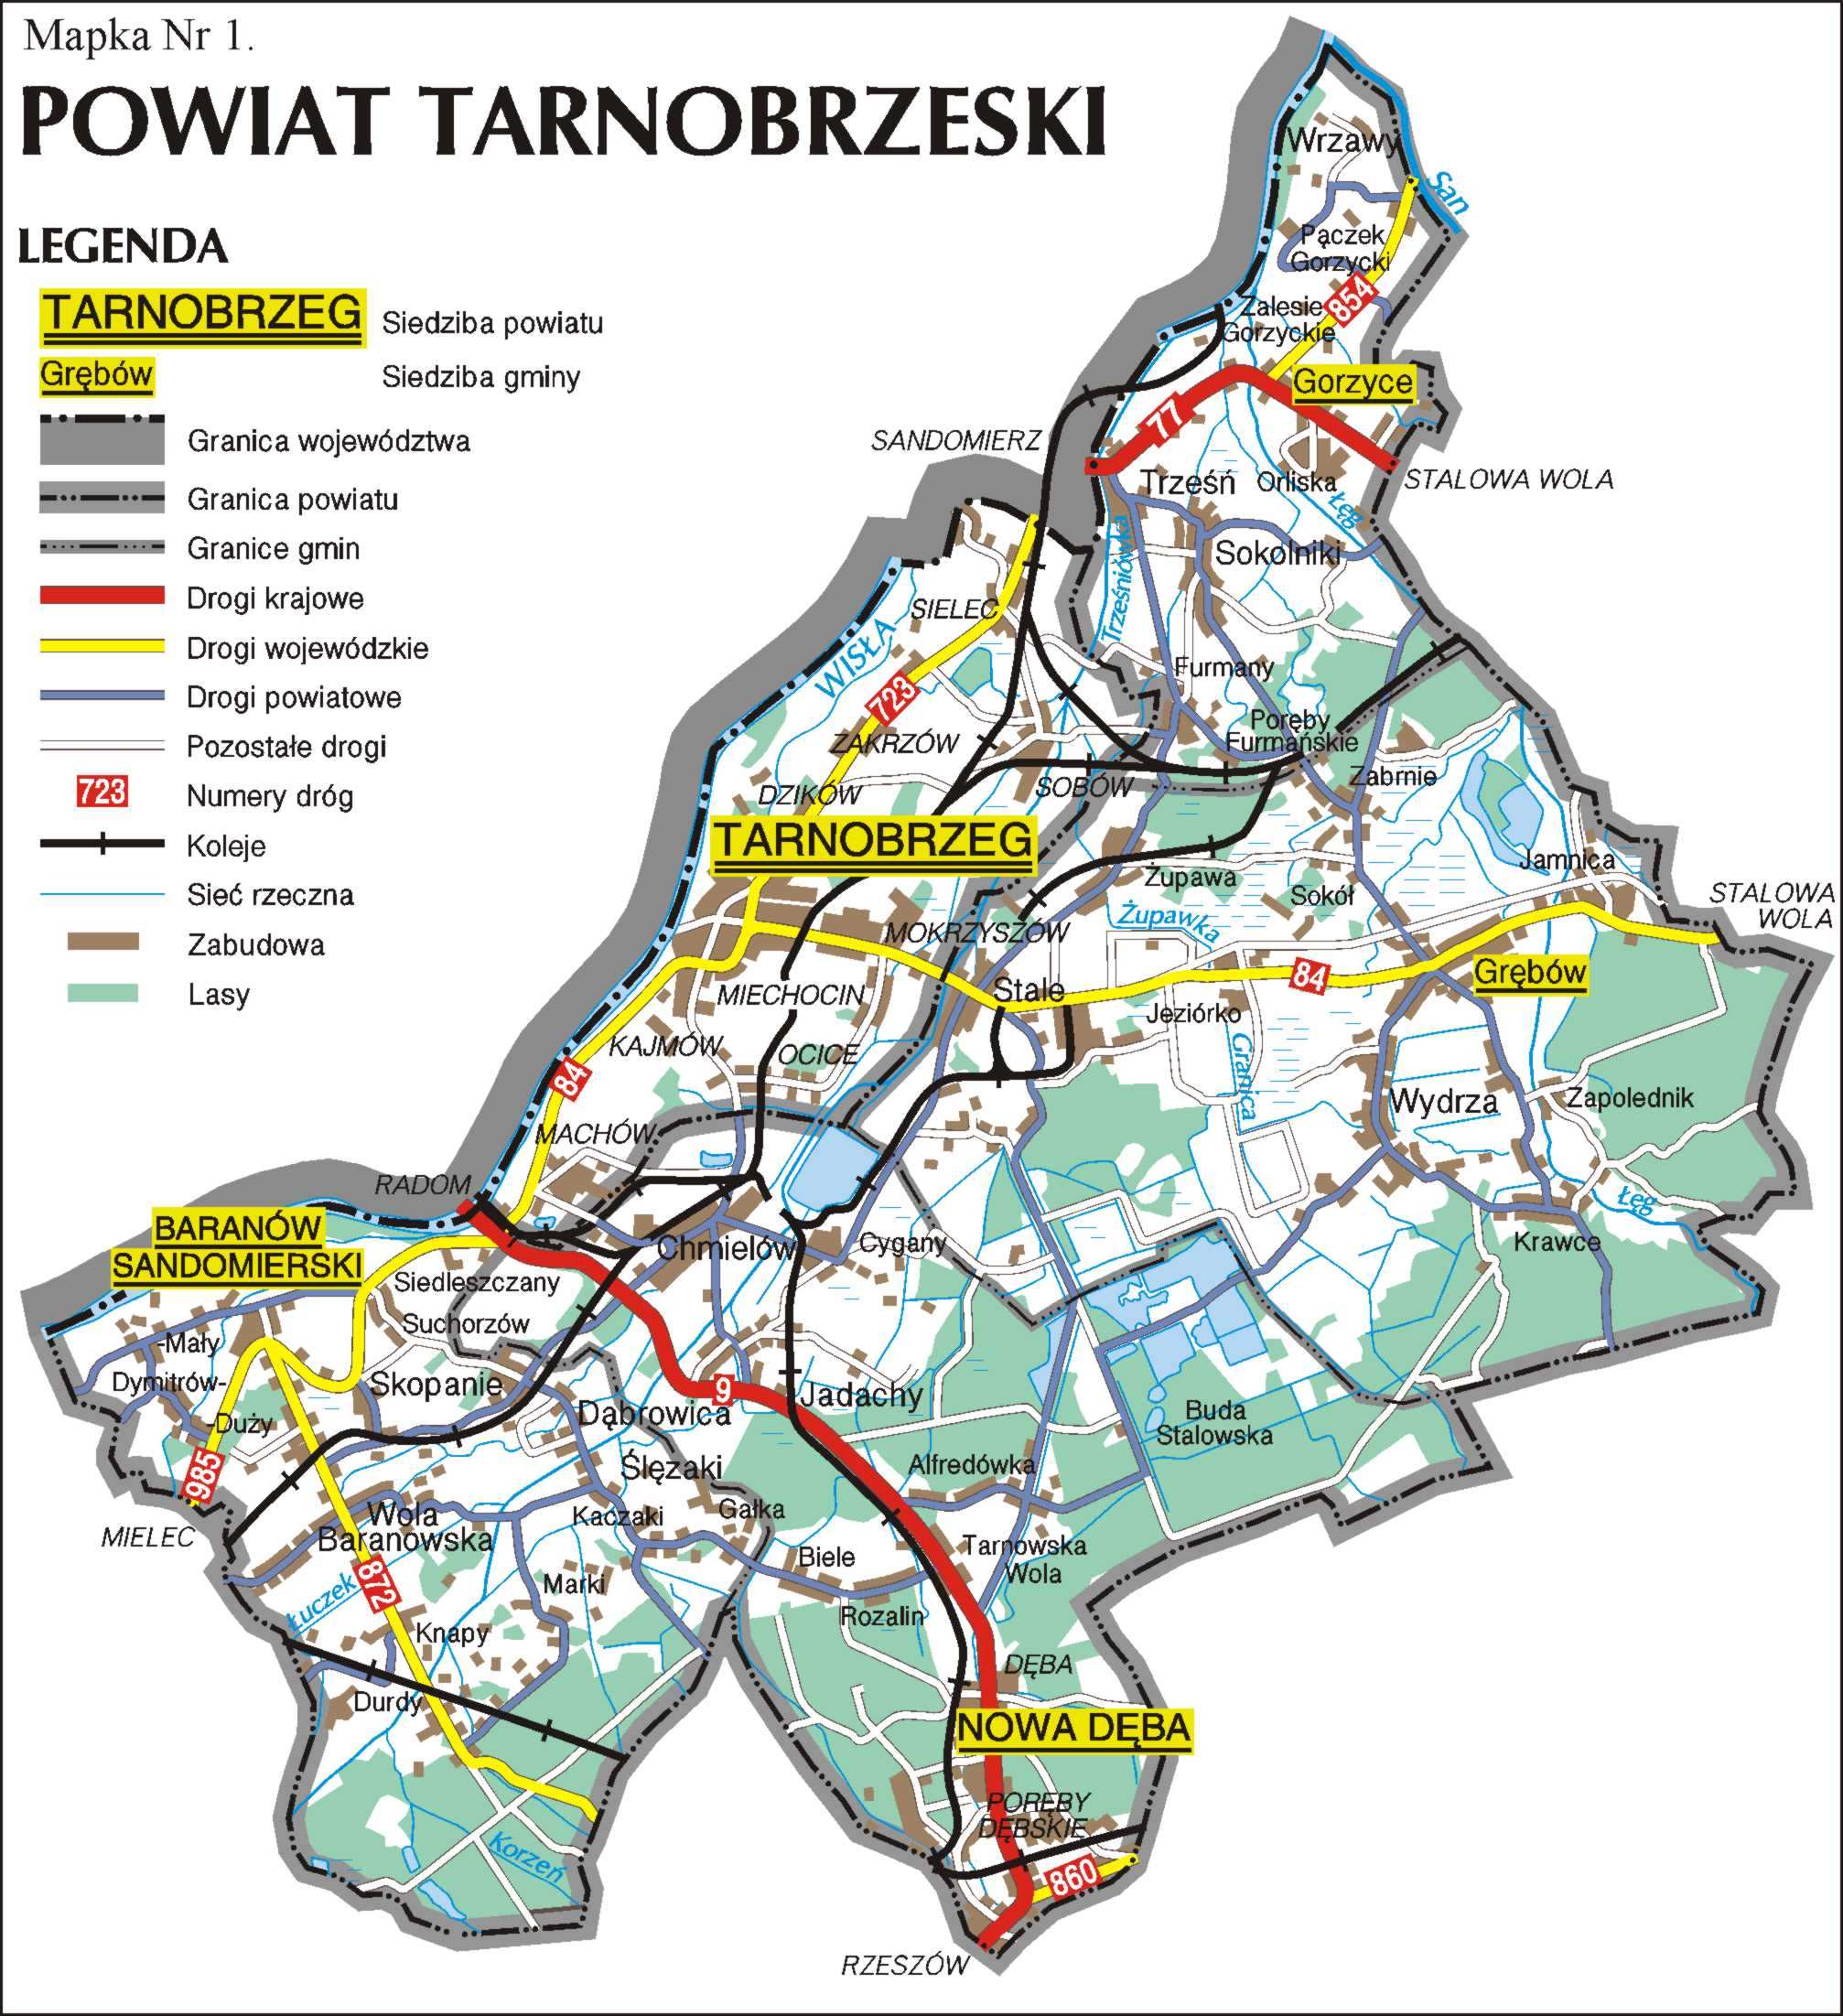 1. Informacje ogólne 1.1. PołoŜenie, powierzchnia, dane demograficzne Powiat tarnobrzeski (ziemski) obejmuje swym zasięgiem obszar 52.002 ha.